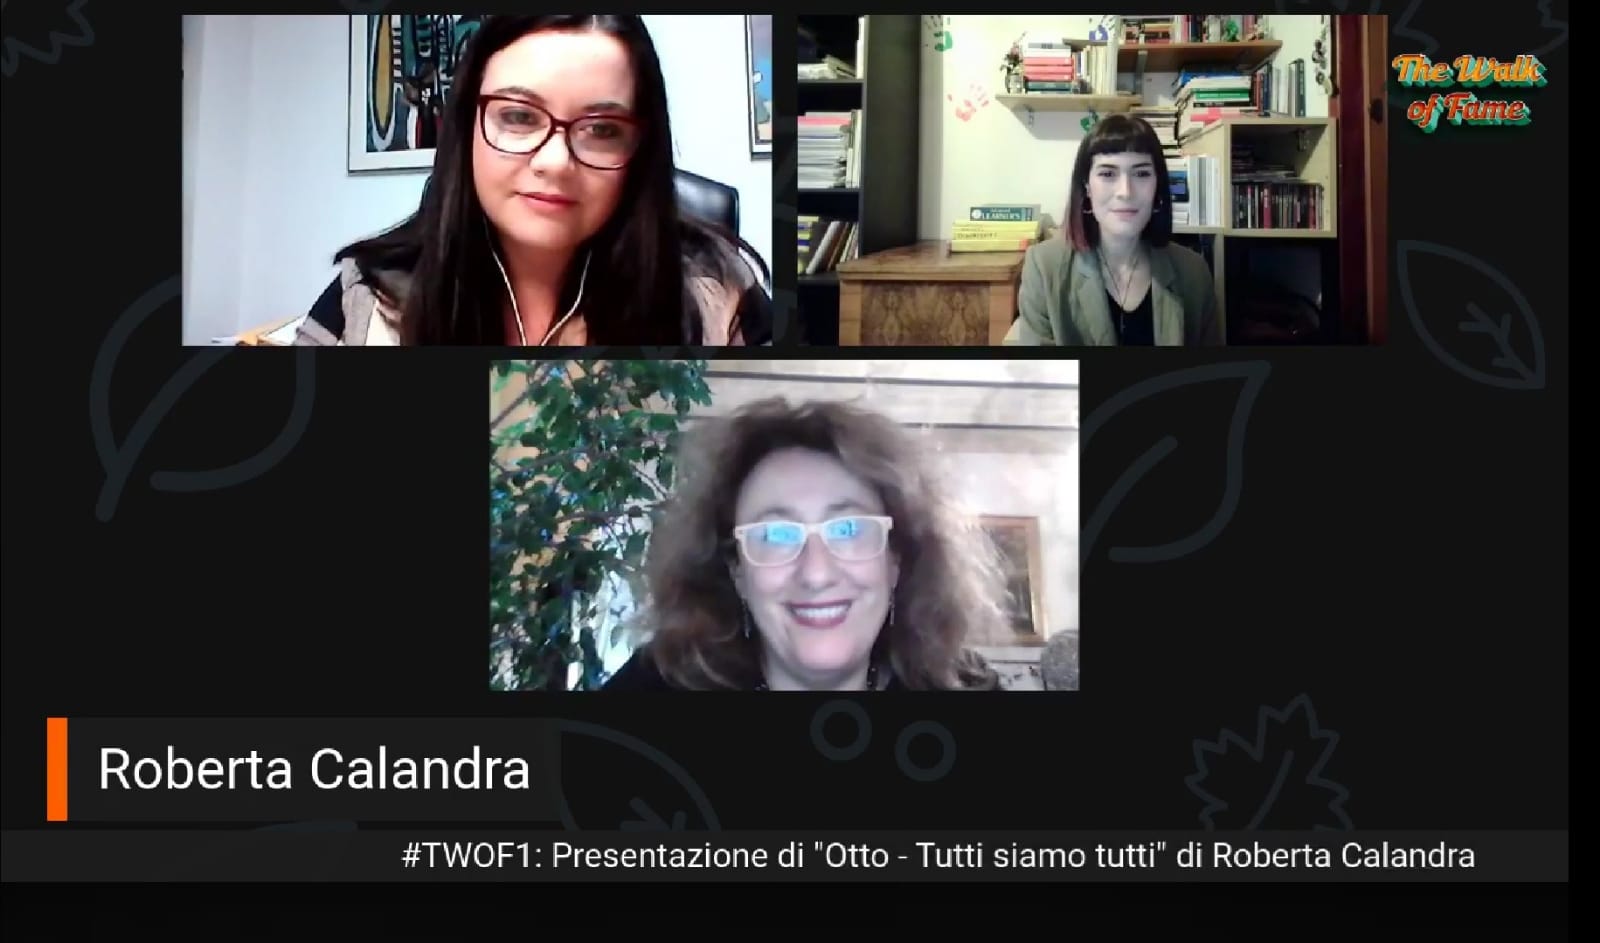 #TWOF1: Presentazione di "Otto - Tutti siamo tutti" di Roberta Calandra